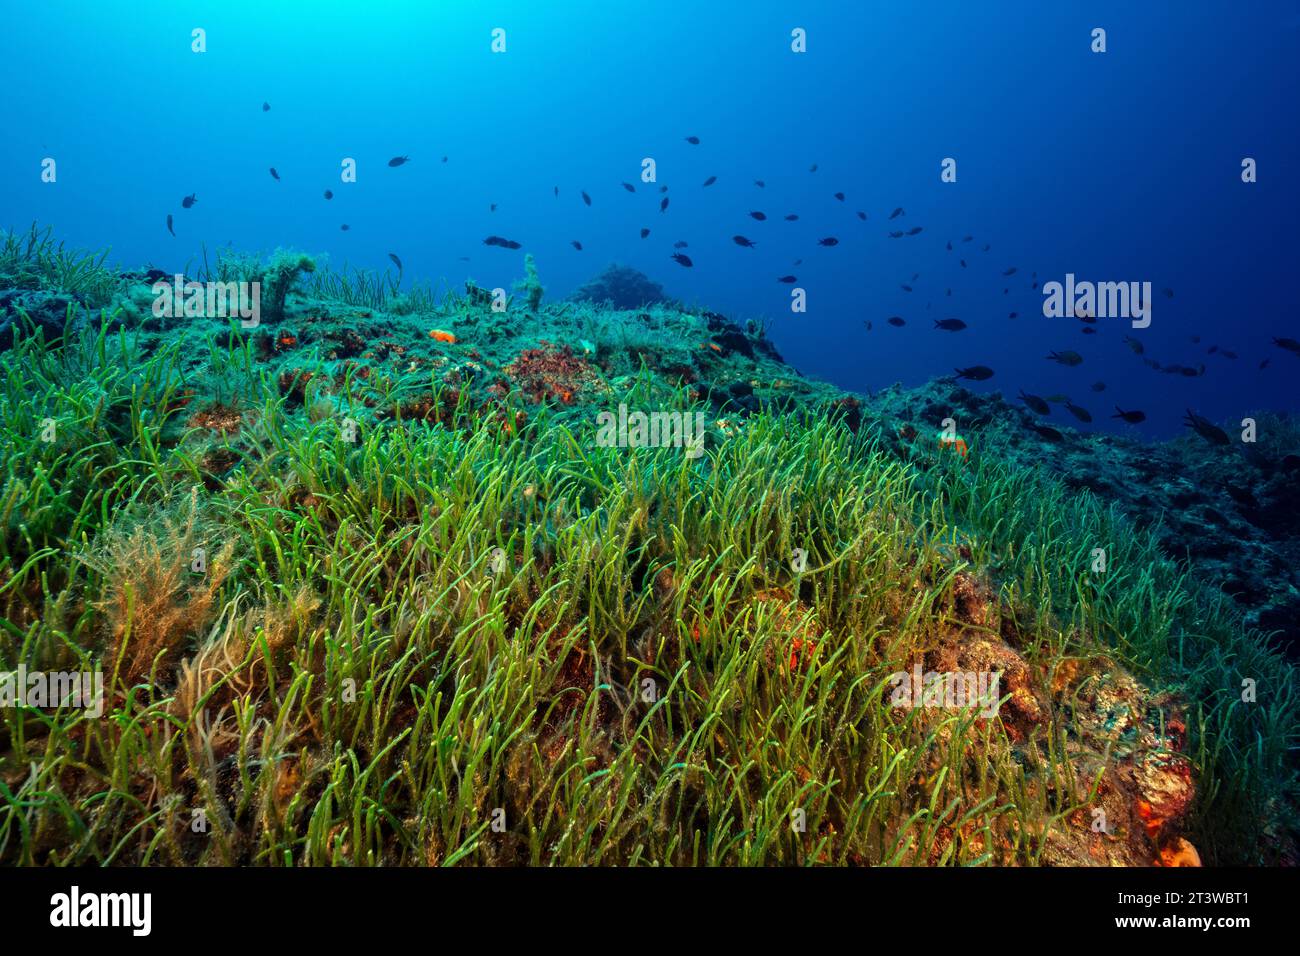 Alghe verdi invasive, Caulerpa resemosa lamourouxii F. requienii, che coprono l'habitat coralligeno nella baia di Fethiye in Turchia. Foto Stock